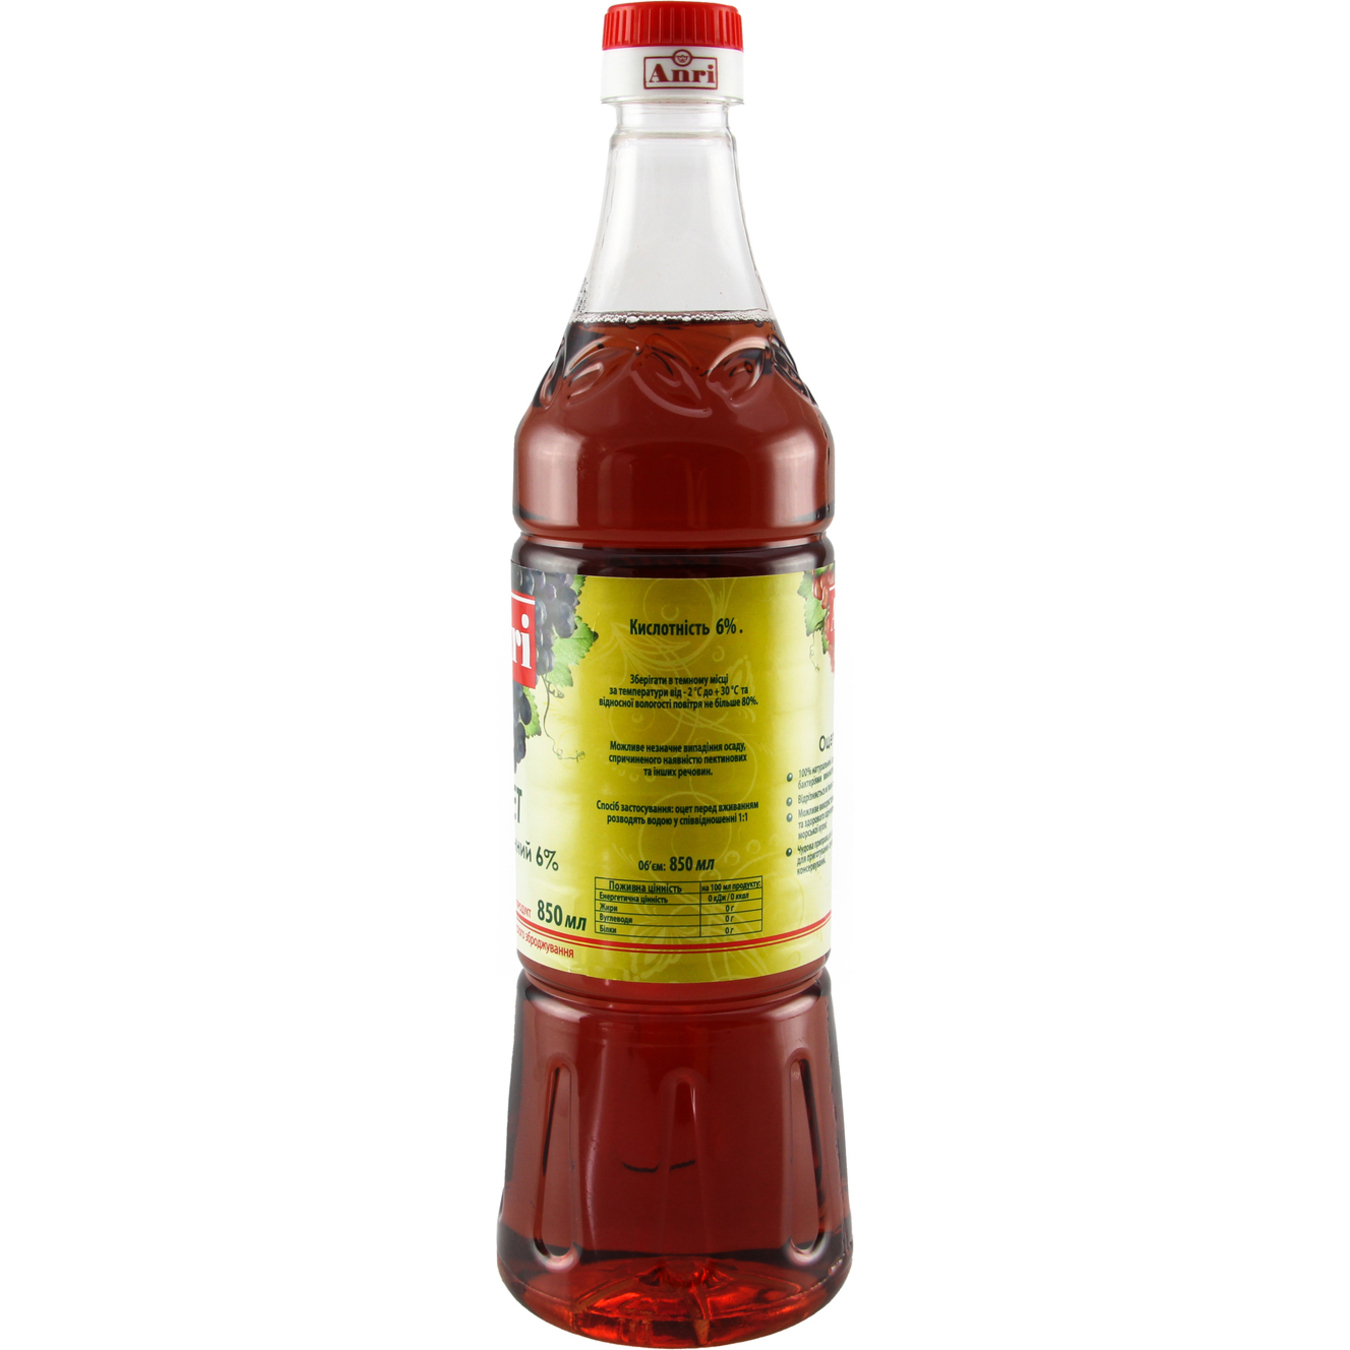 ANRIWine Vinegar 6% 850ml 3